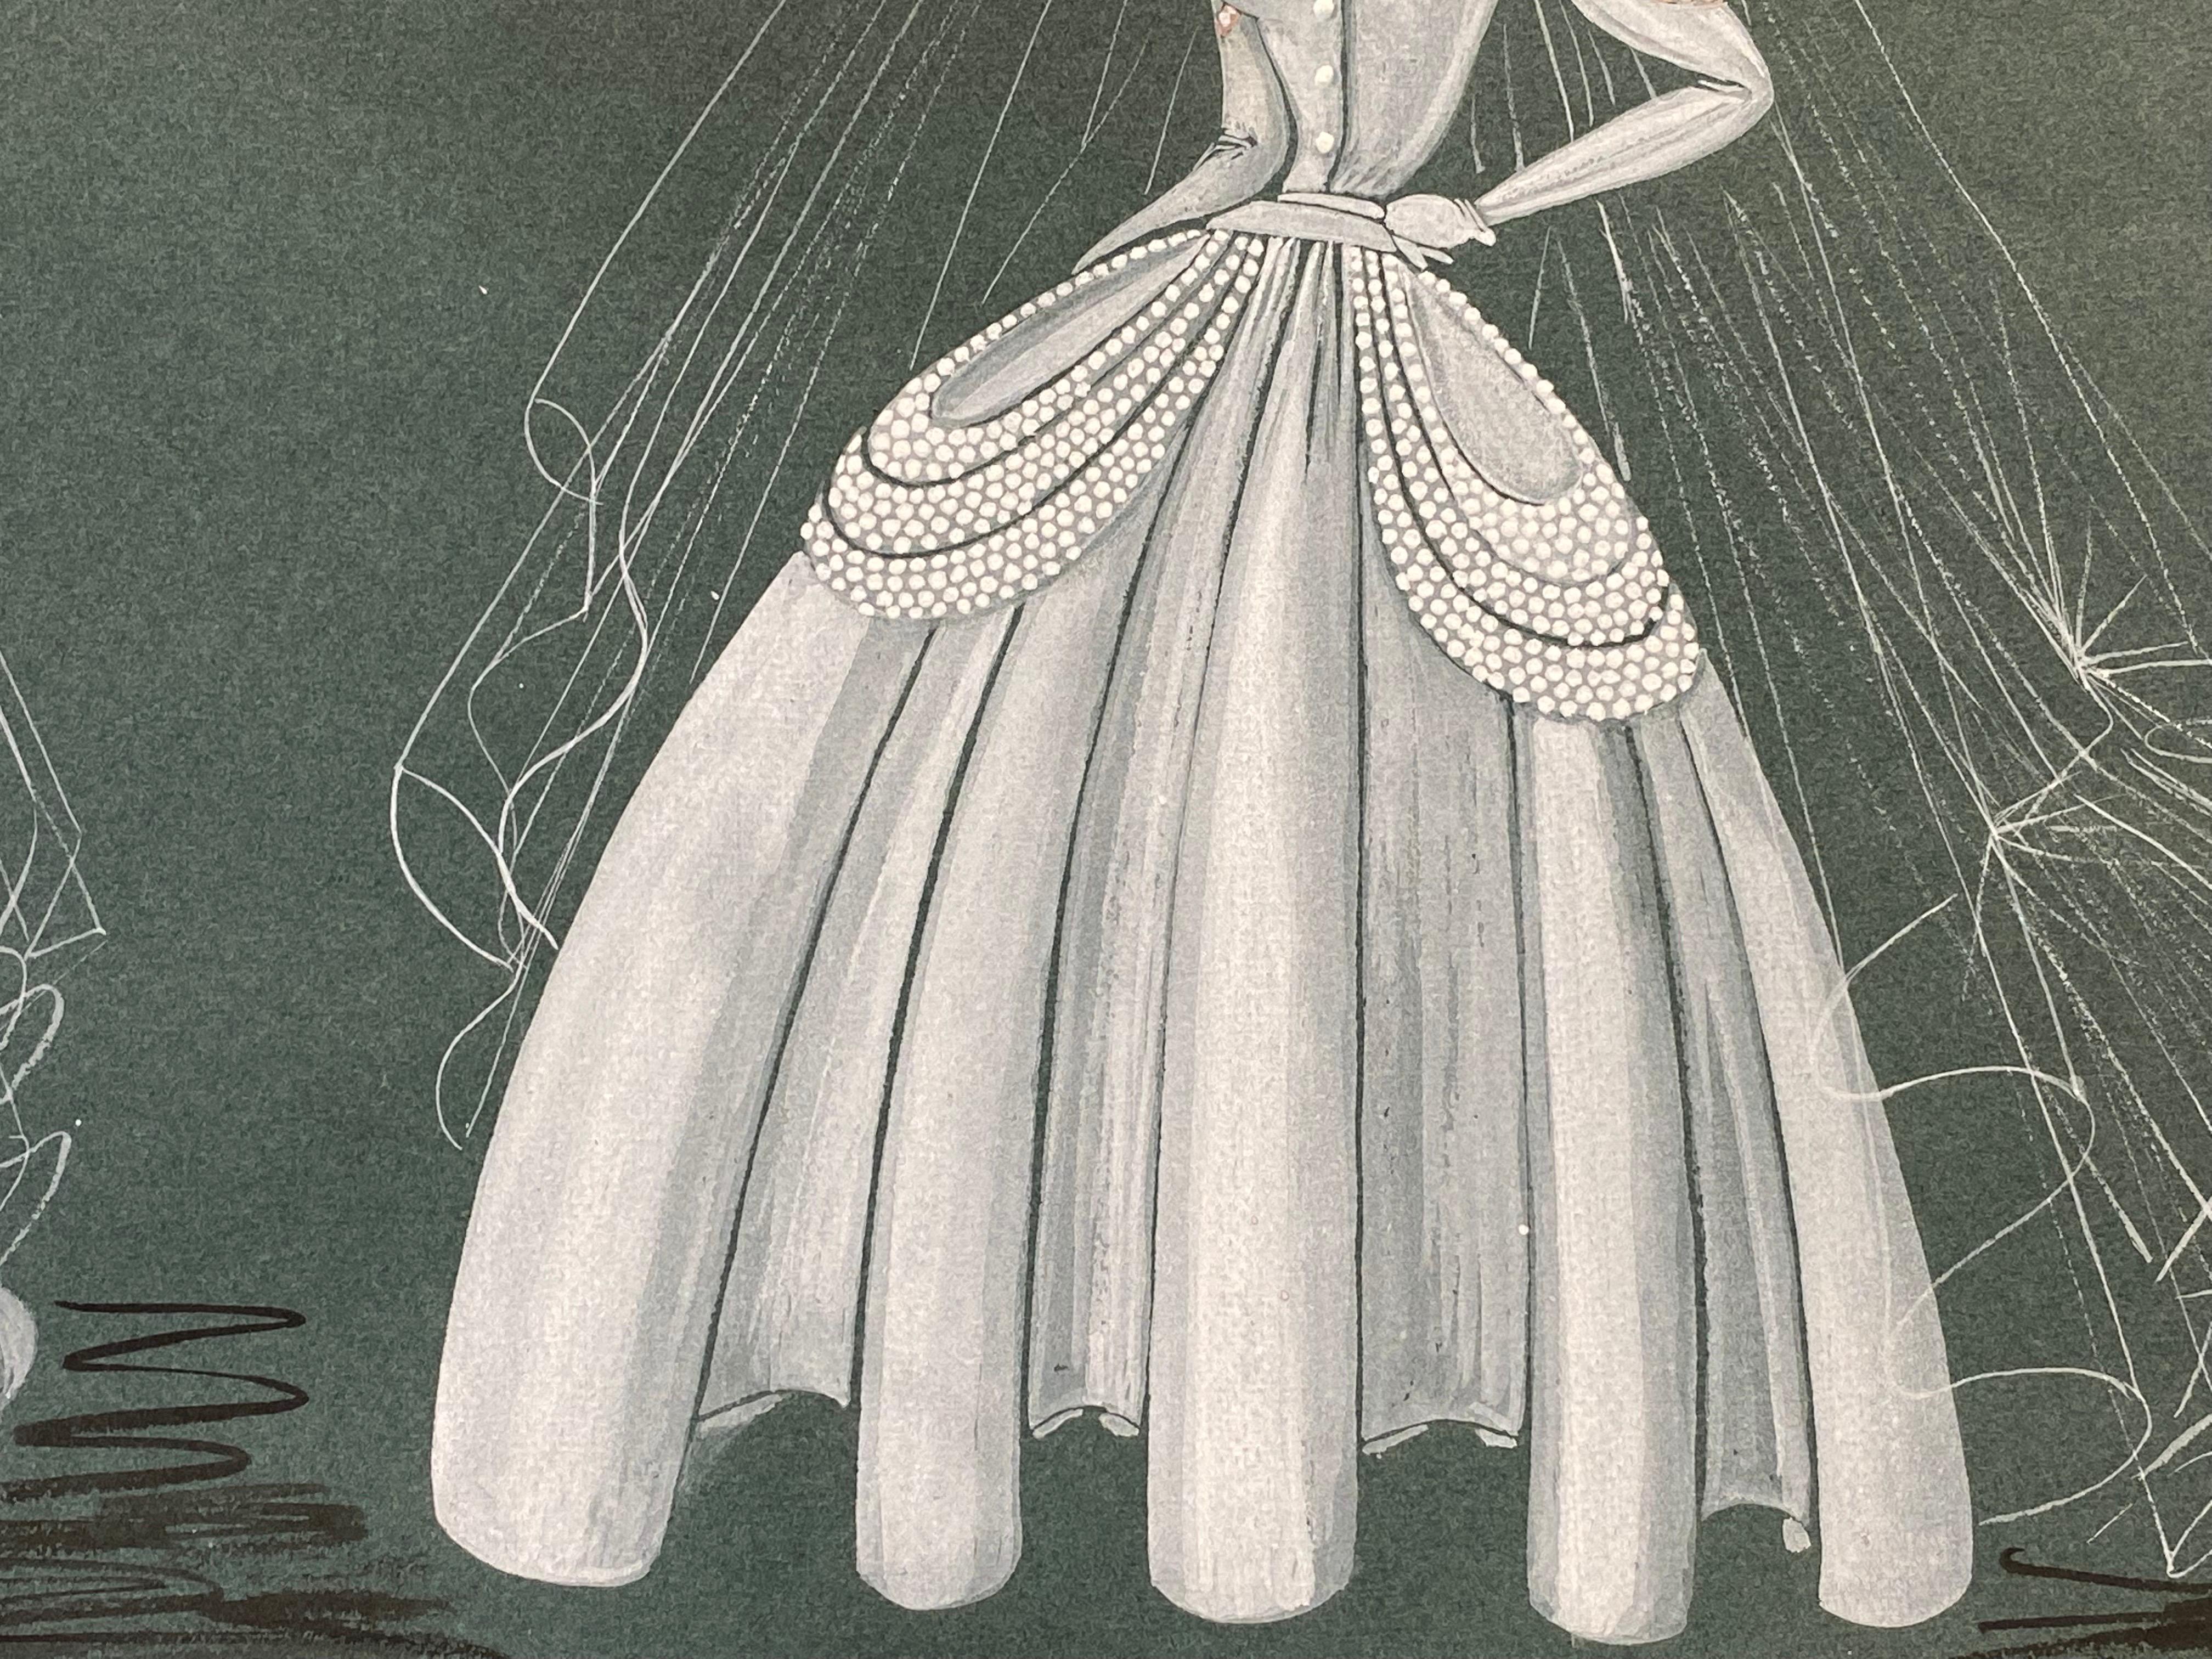 Sehr stilvolles, einzigartiges und originelles Modedesign aus den 1940er Jahren von der französischen Illustratorin Geneviève Thomas.

Das Gemälde, ausgeführt in Gouache und Bleistift.

Die Skizze ist original, Vintage und misst ungerahmt 12,75 x